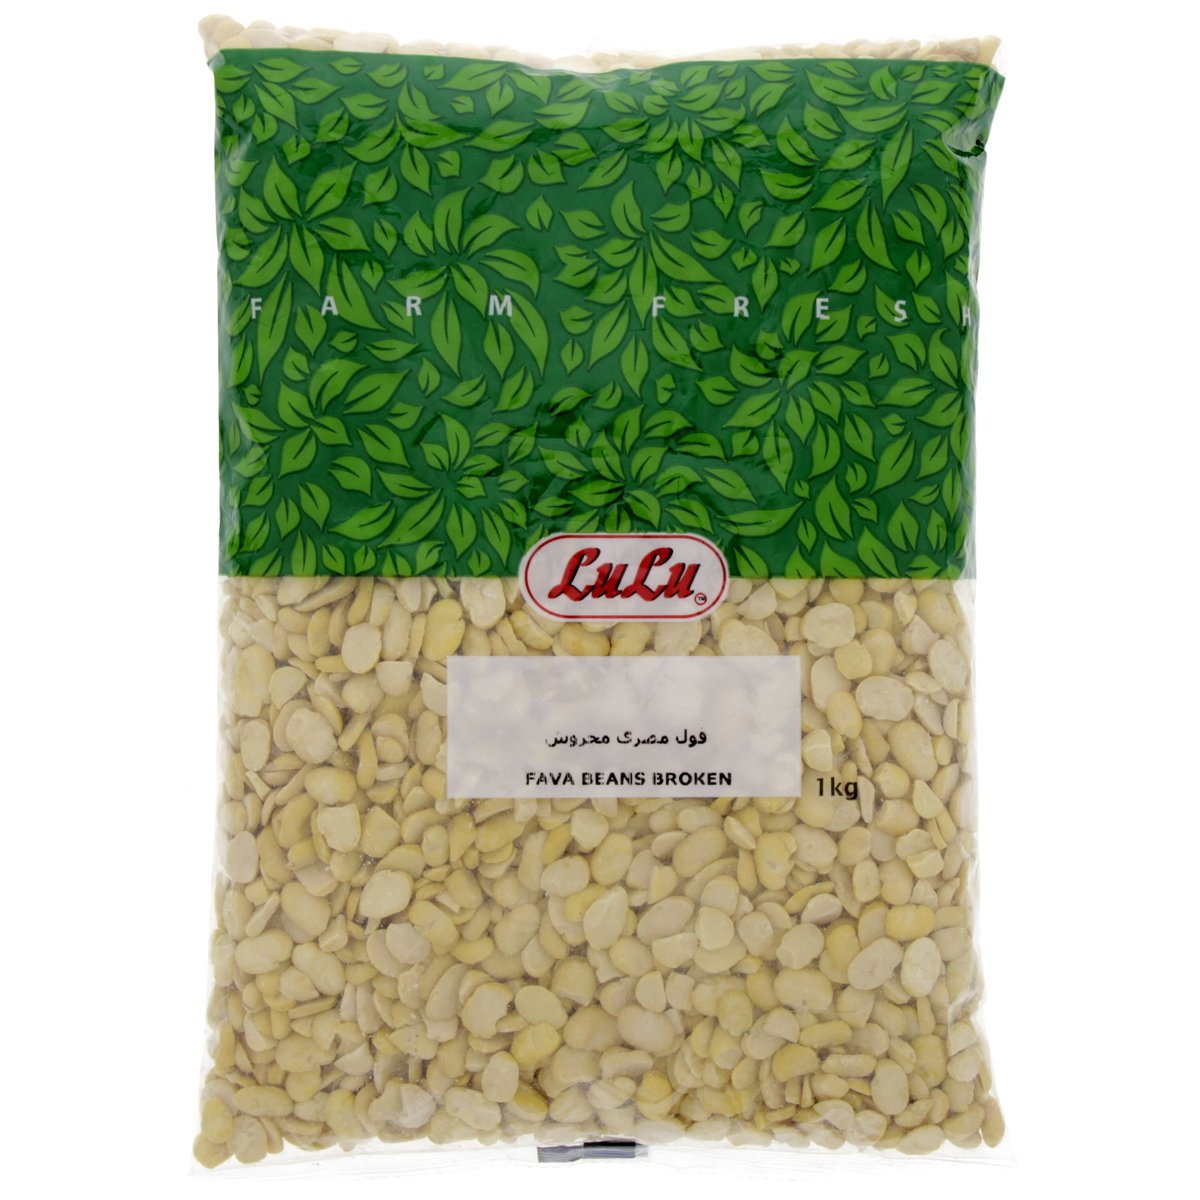 LuLu Fava Beans Broken 1kg